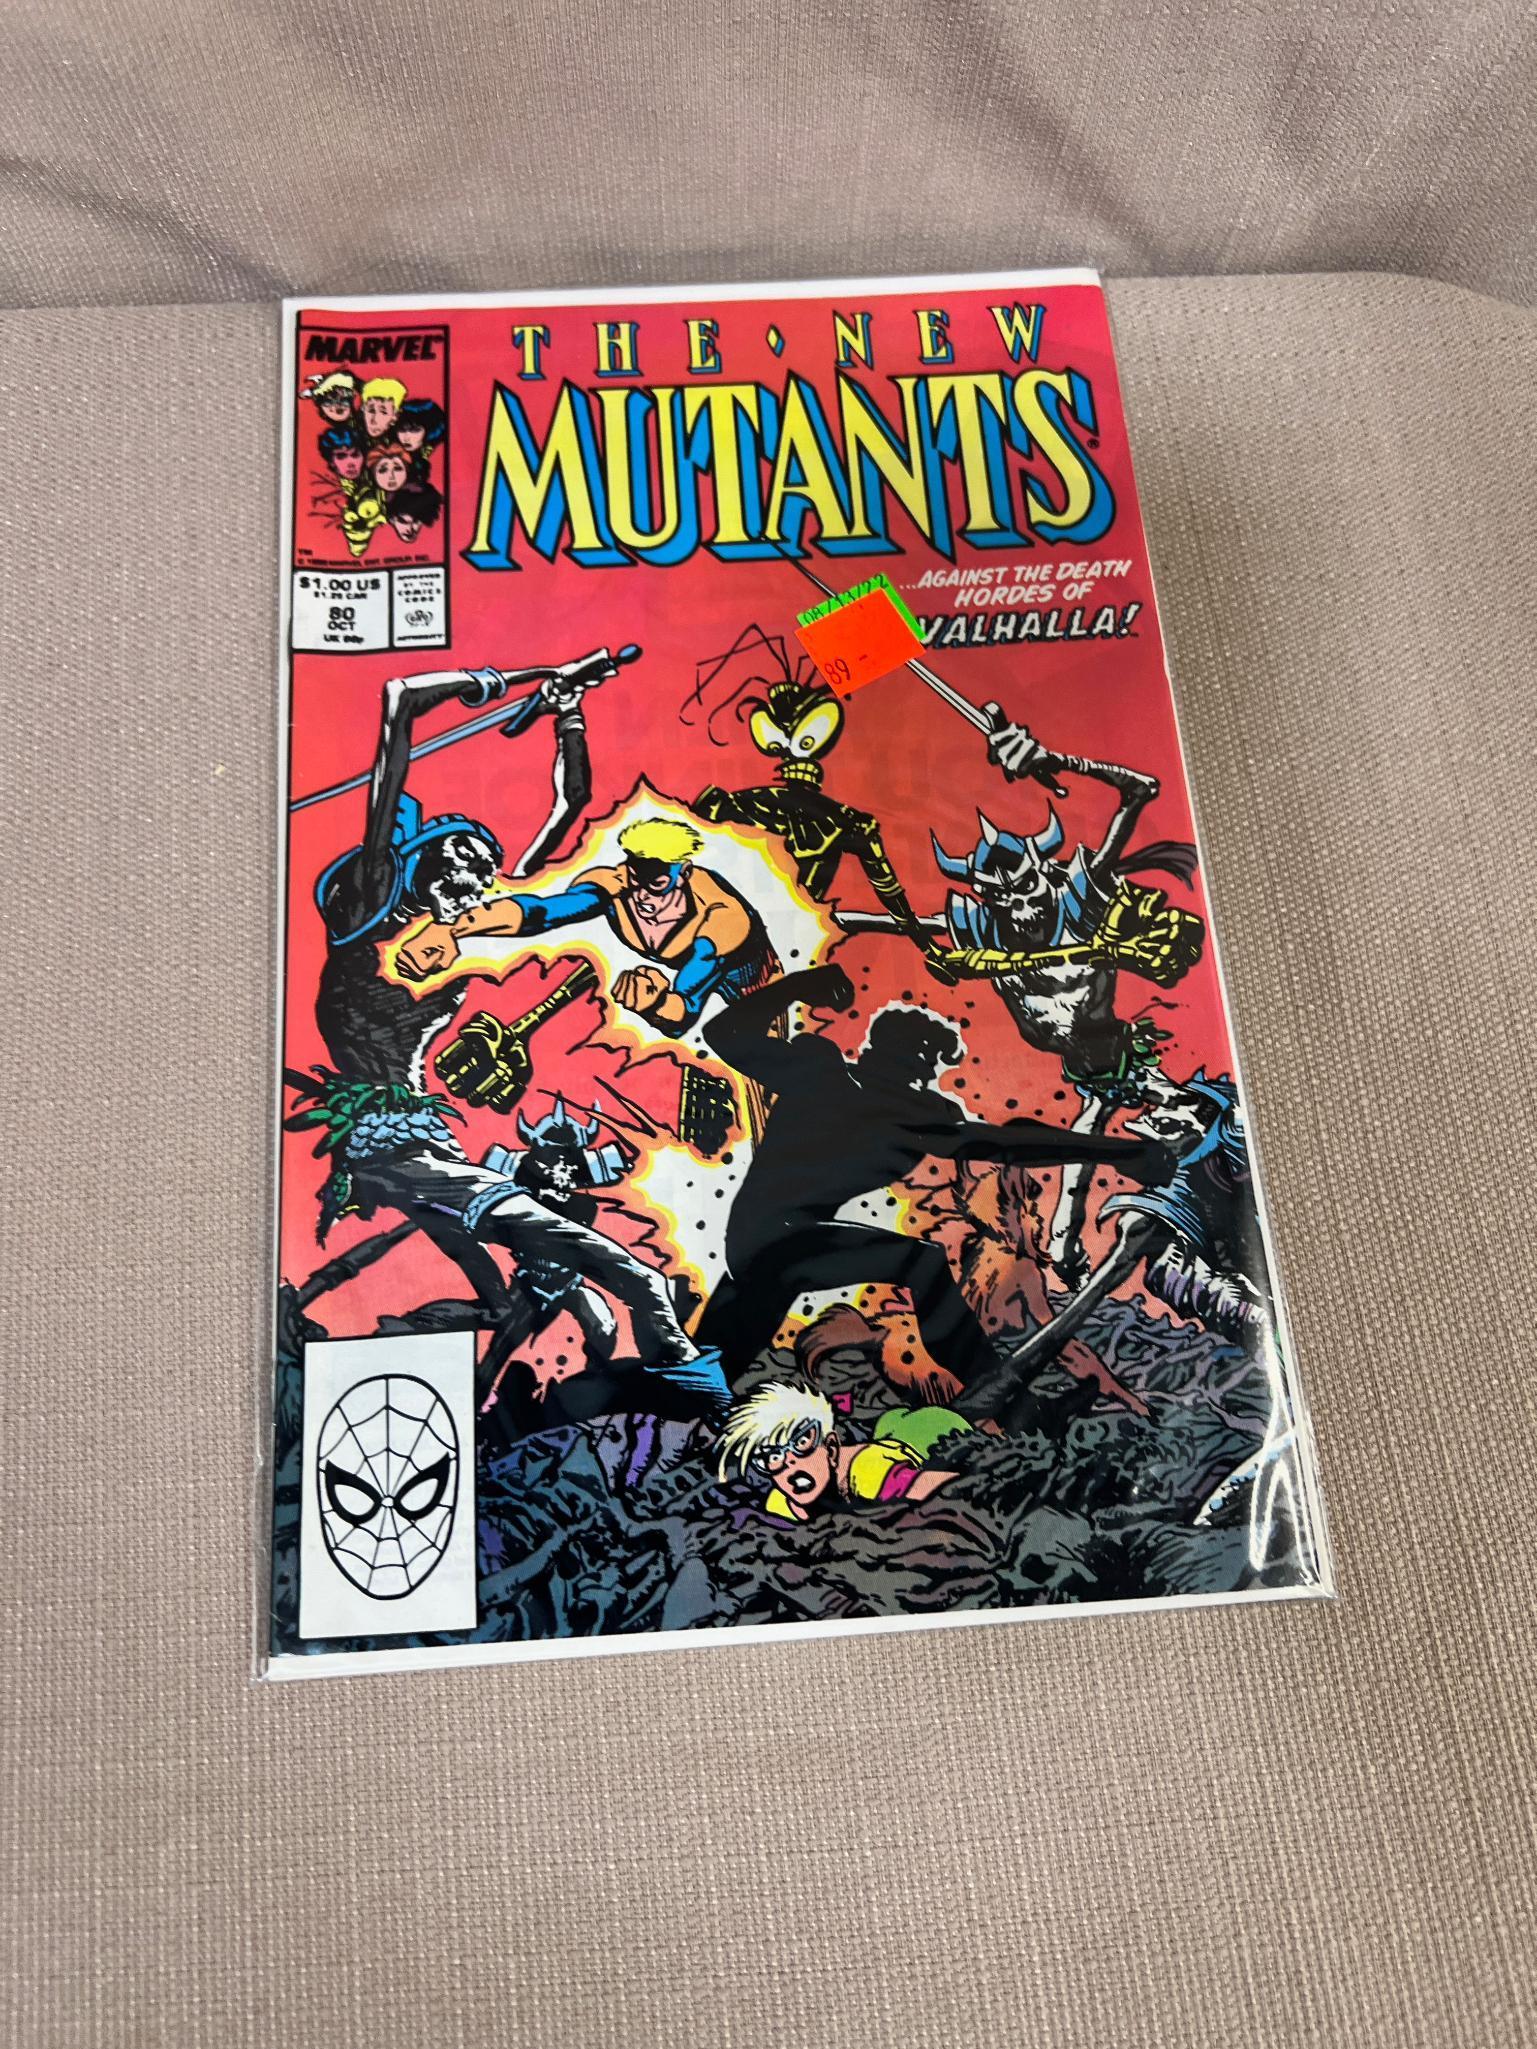 15- The New Mutants Comic Books, issues 66-80